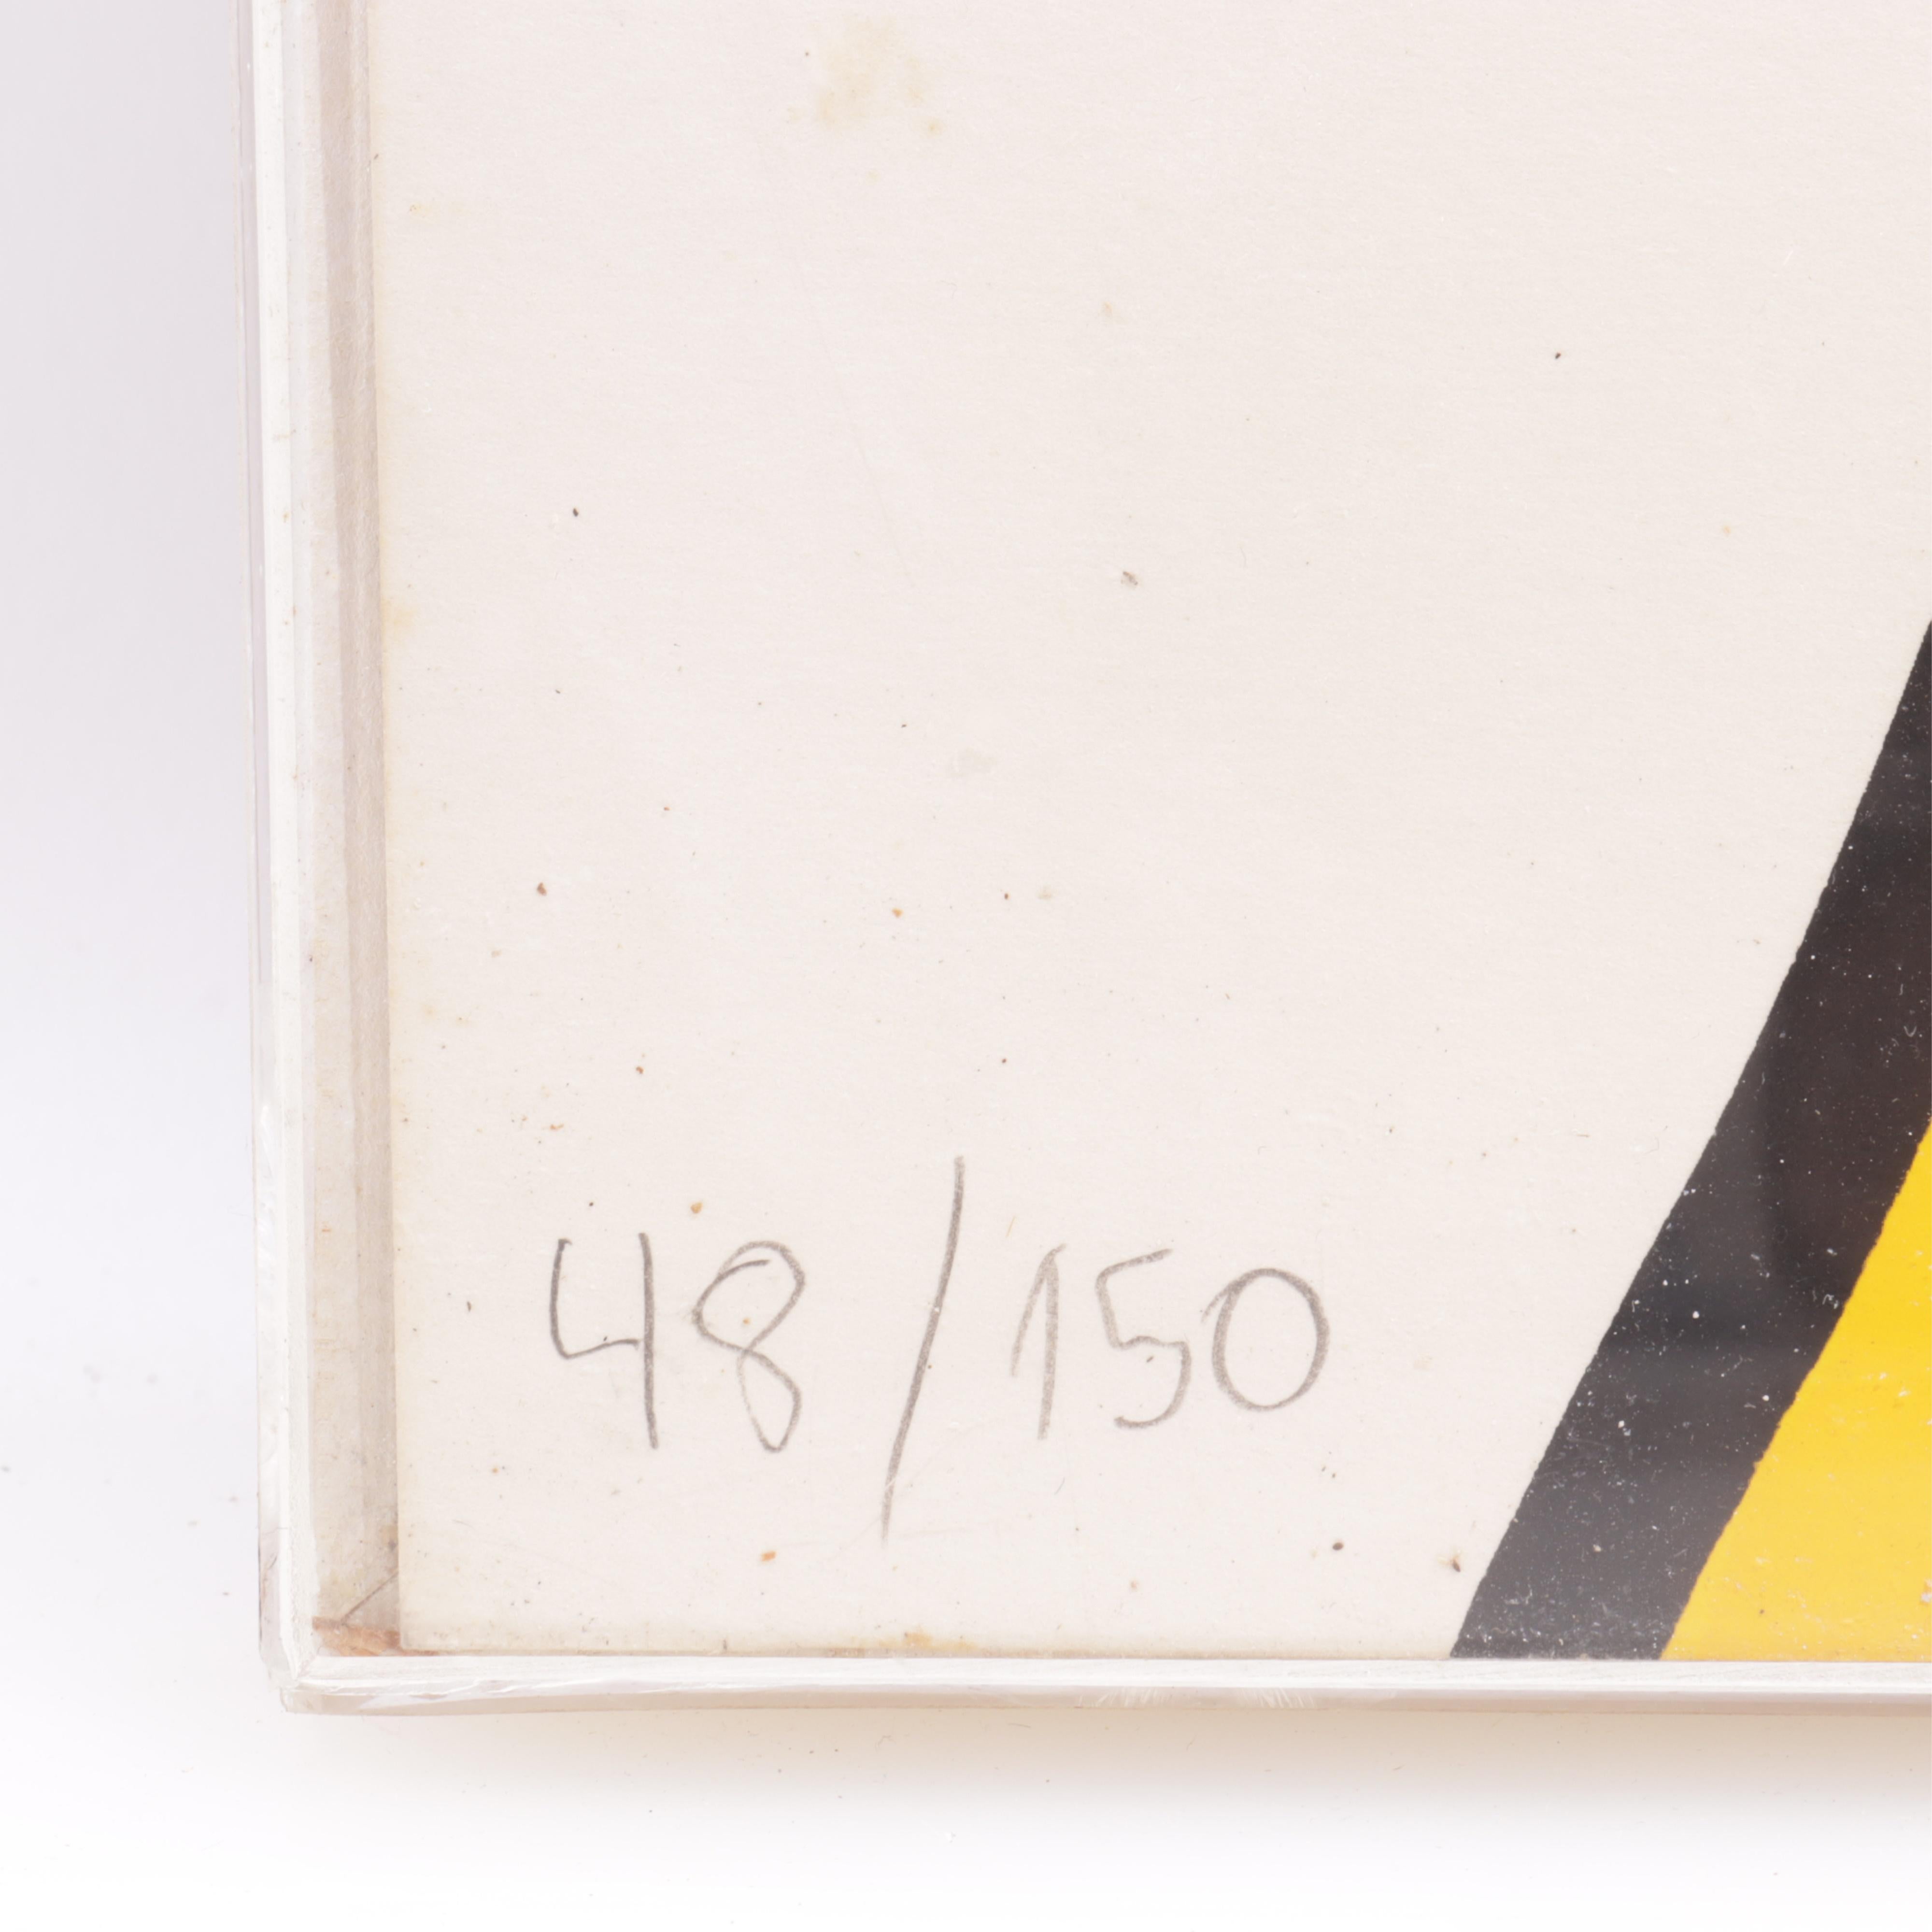 Soleil et pyramides, 1973
Lithographie en couleurs
29.5 x 43.5 pouces 
Signé et numéroté au crayon, édition de 150 exemplaires
Non encadré

Alexander Calder est né à Philadelphie (États-Unis) en 1898. Il suit des études d'ingénieur en mécanique,